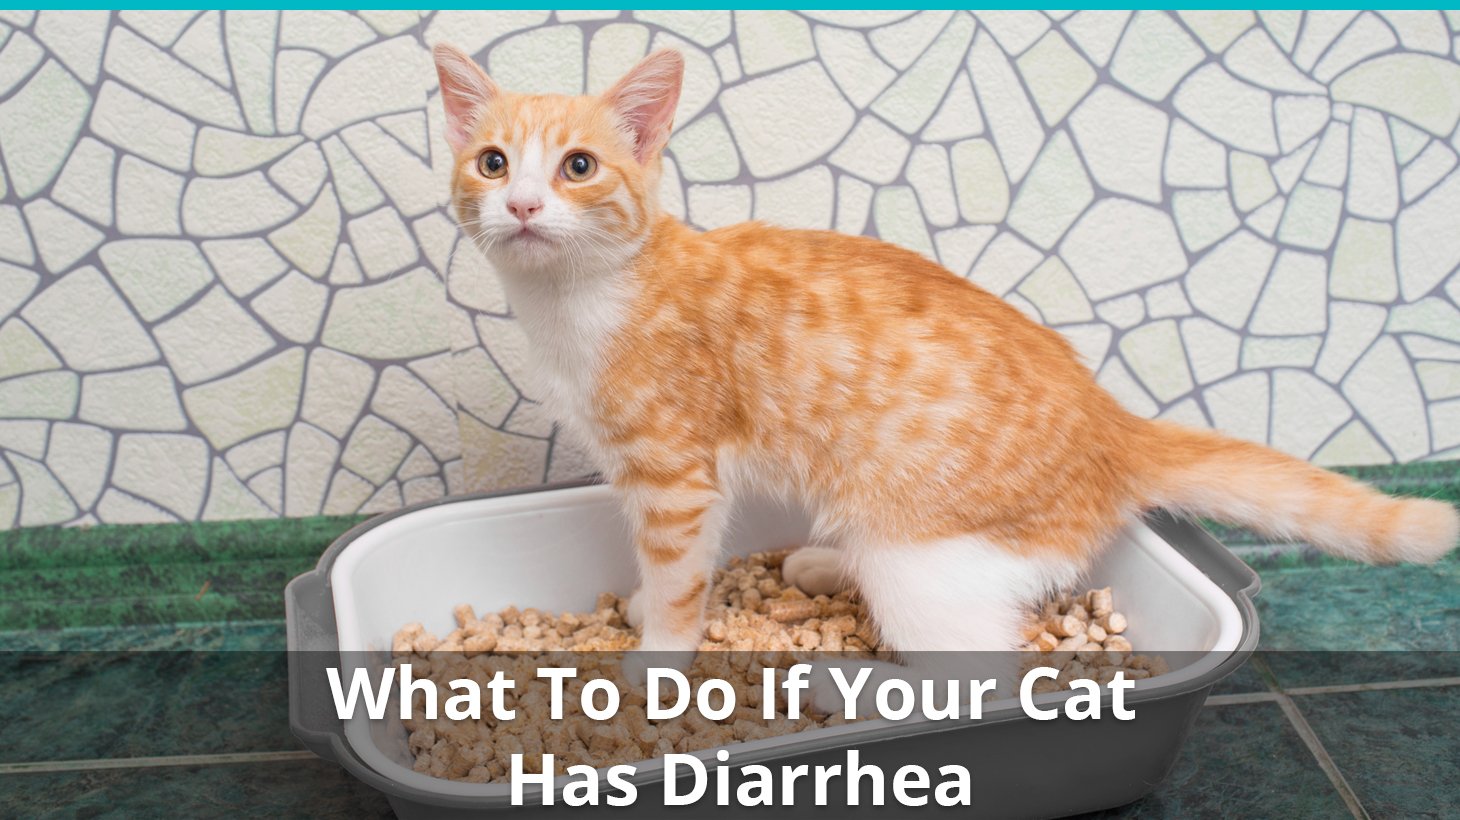 Cat Has Diarrhea or Runny Poo